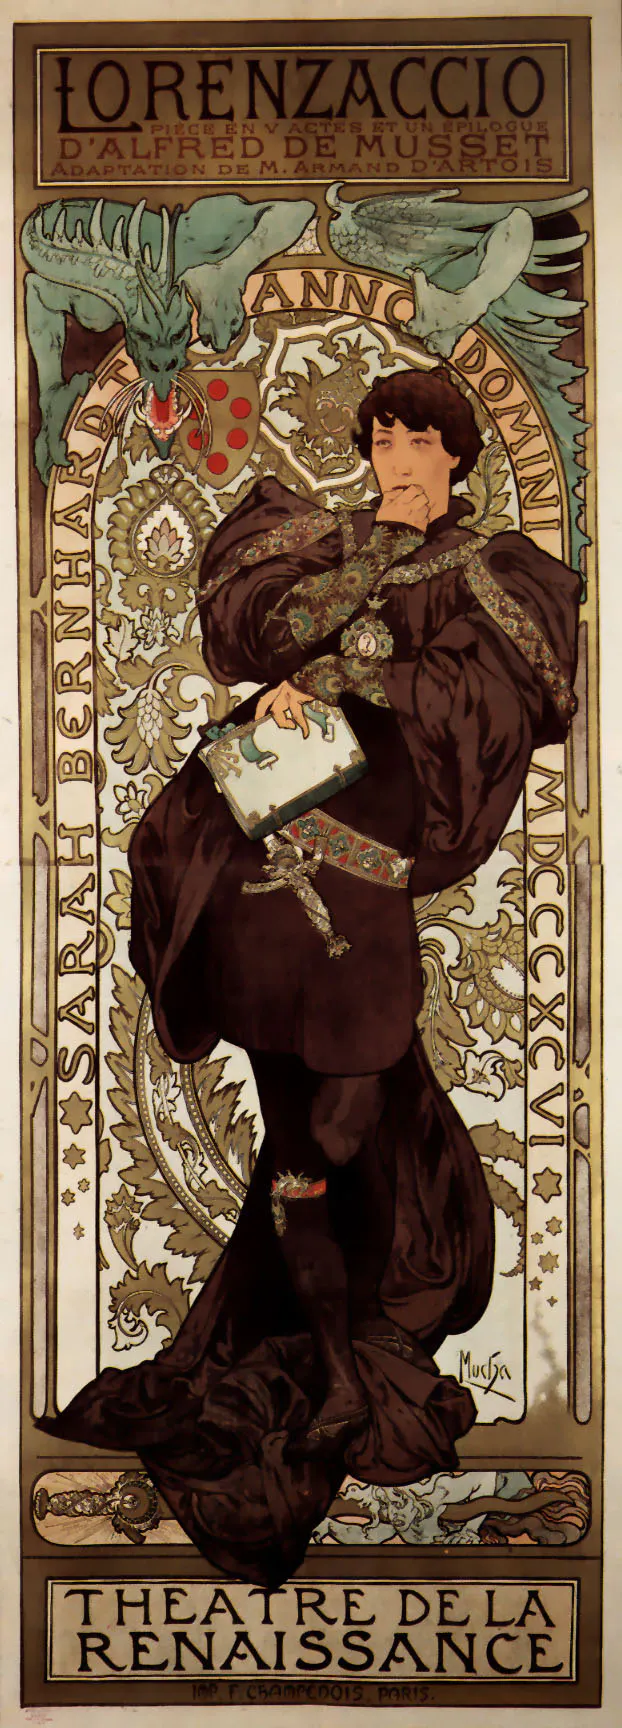 Jugendstil-Plakat, das Sarah Bernhardt in Mönchskutte und mit kurzem Haar zeigt